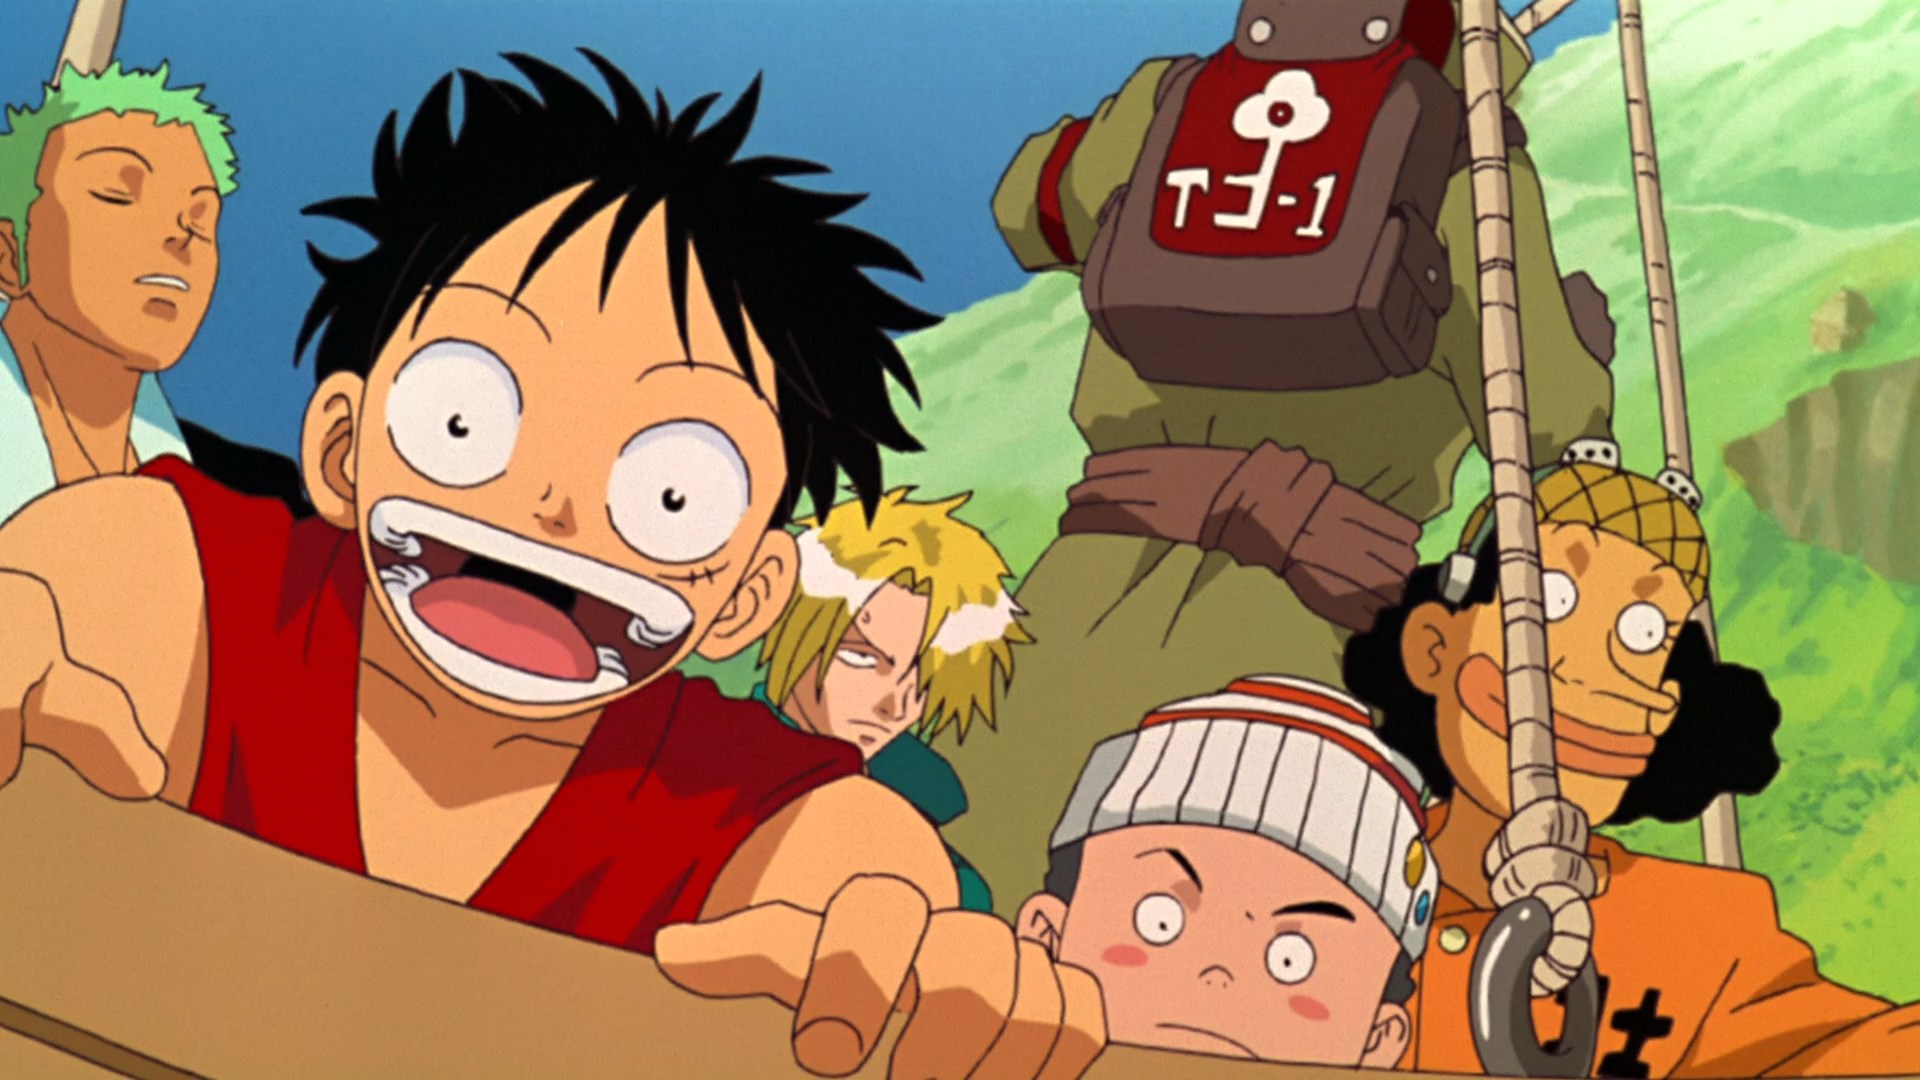 OtakeiraCast - Ep.102 - One Piece - Finalmente o anime do pirata